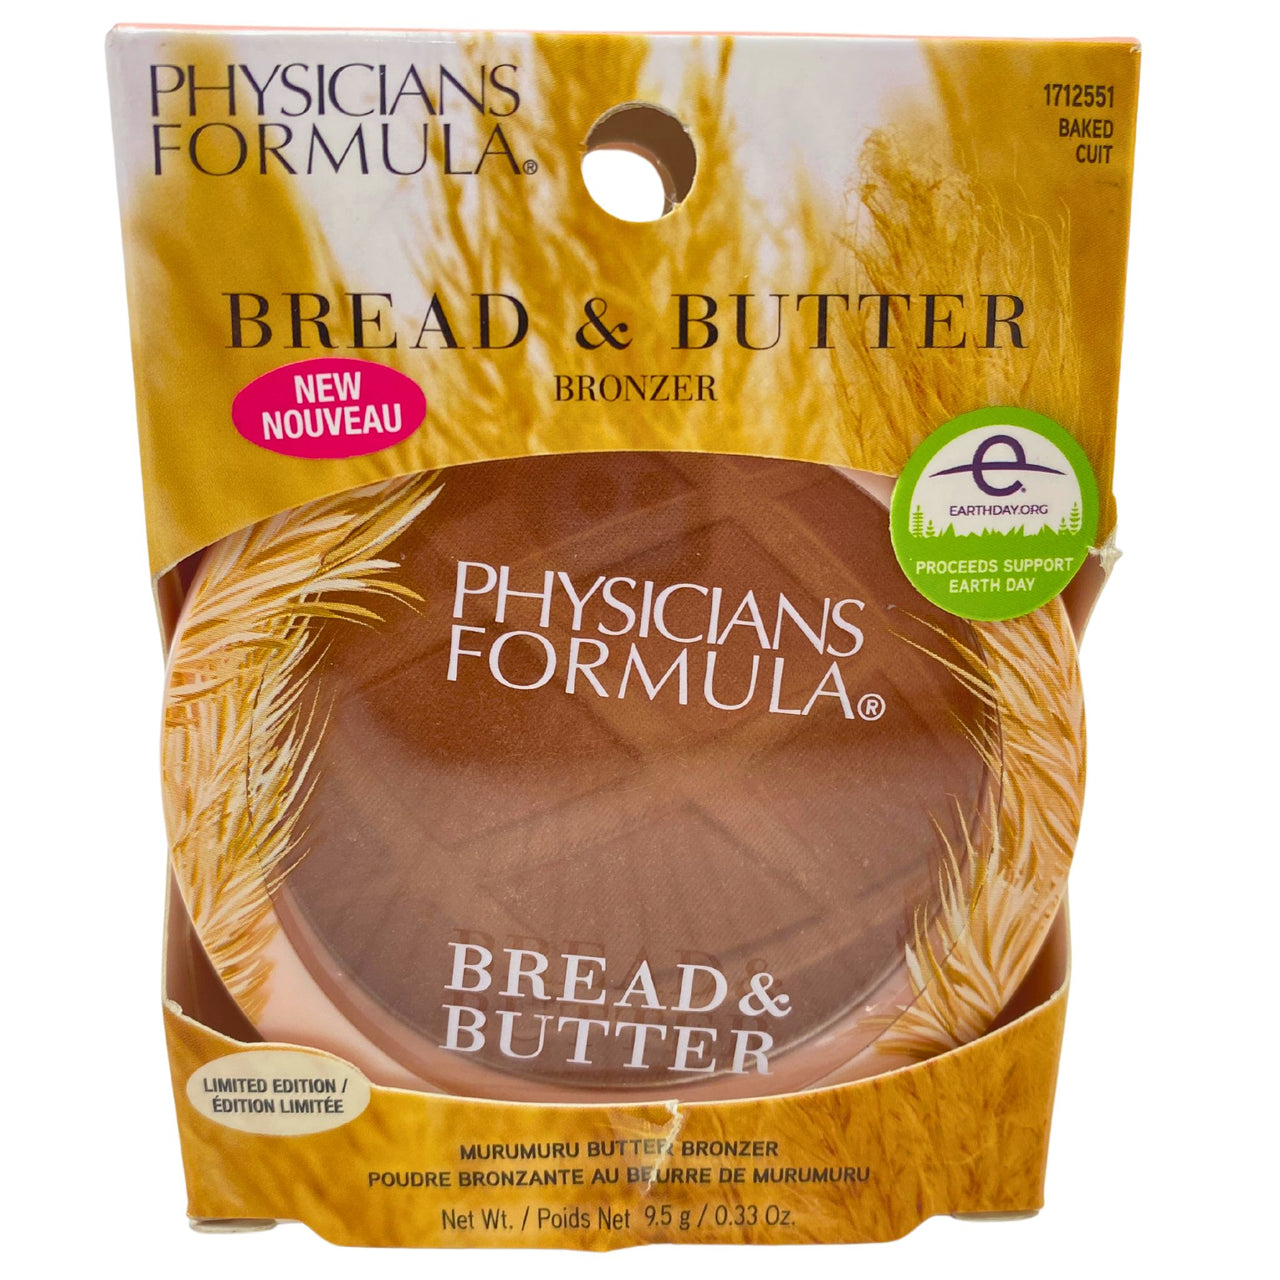 Physicians Formula Bread & Butter Bronzer Murumuru Butter Bronzer Baked Cuit 